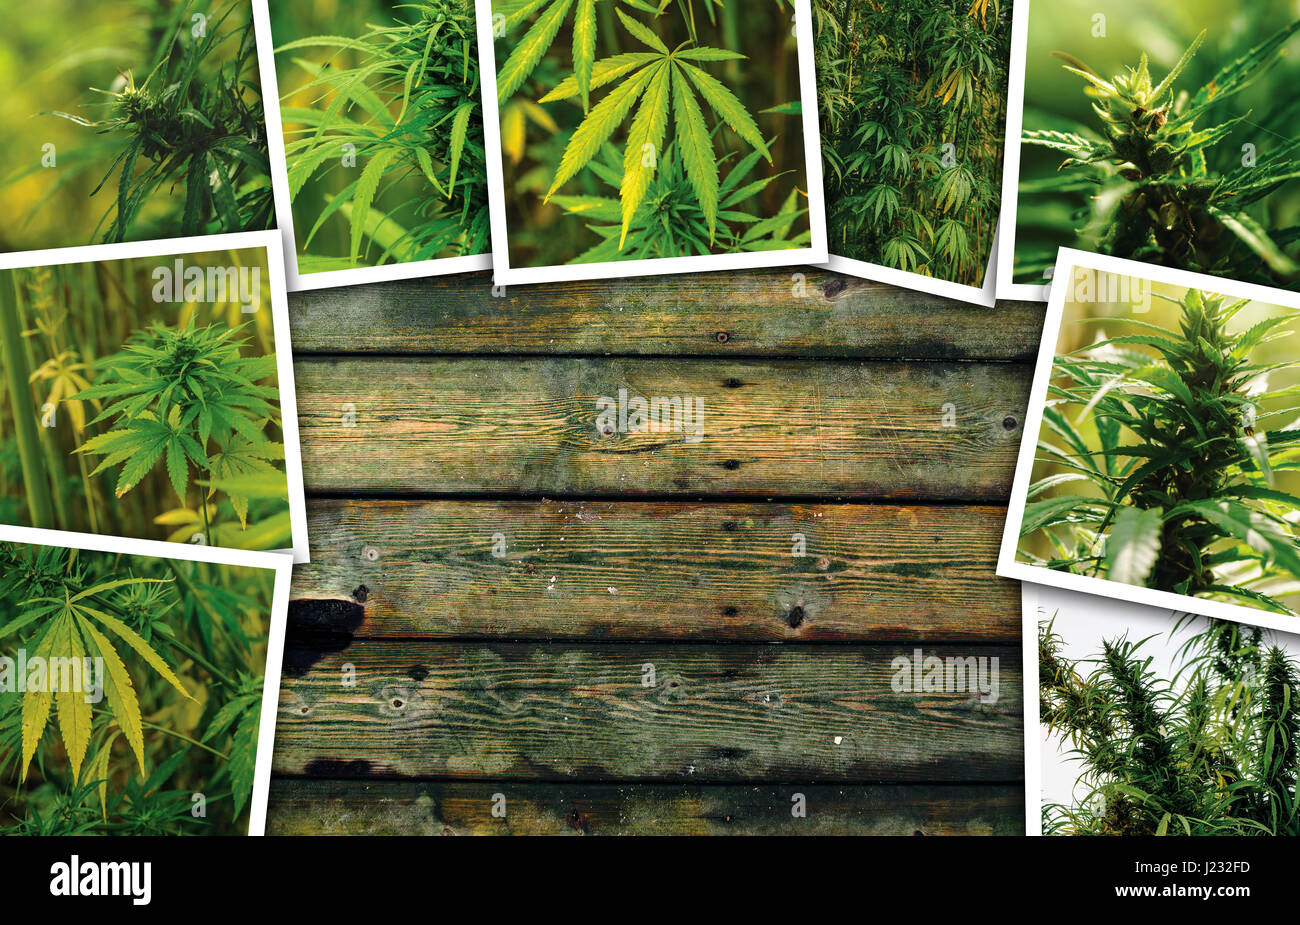 La croissance des plantations de marijuana, photo collage sur fond de bois comme copy space Banque D'Images